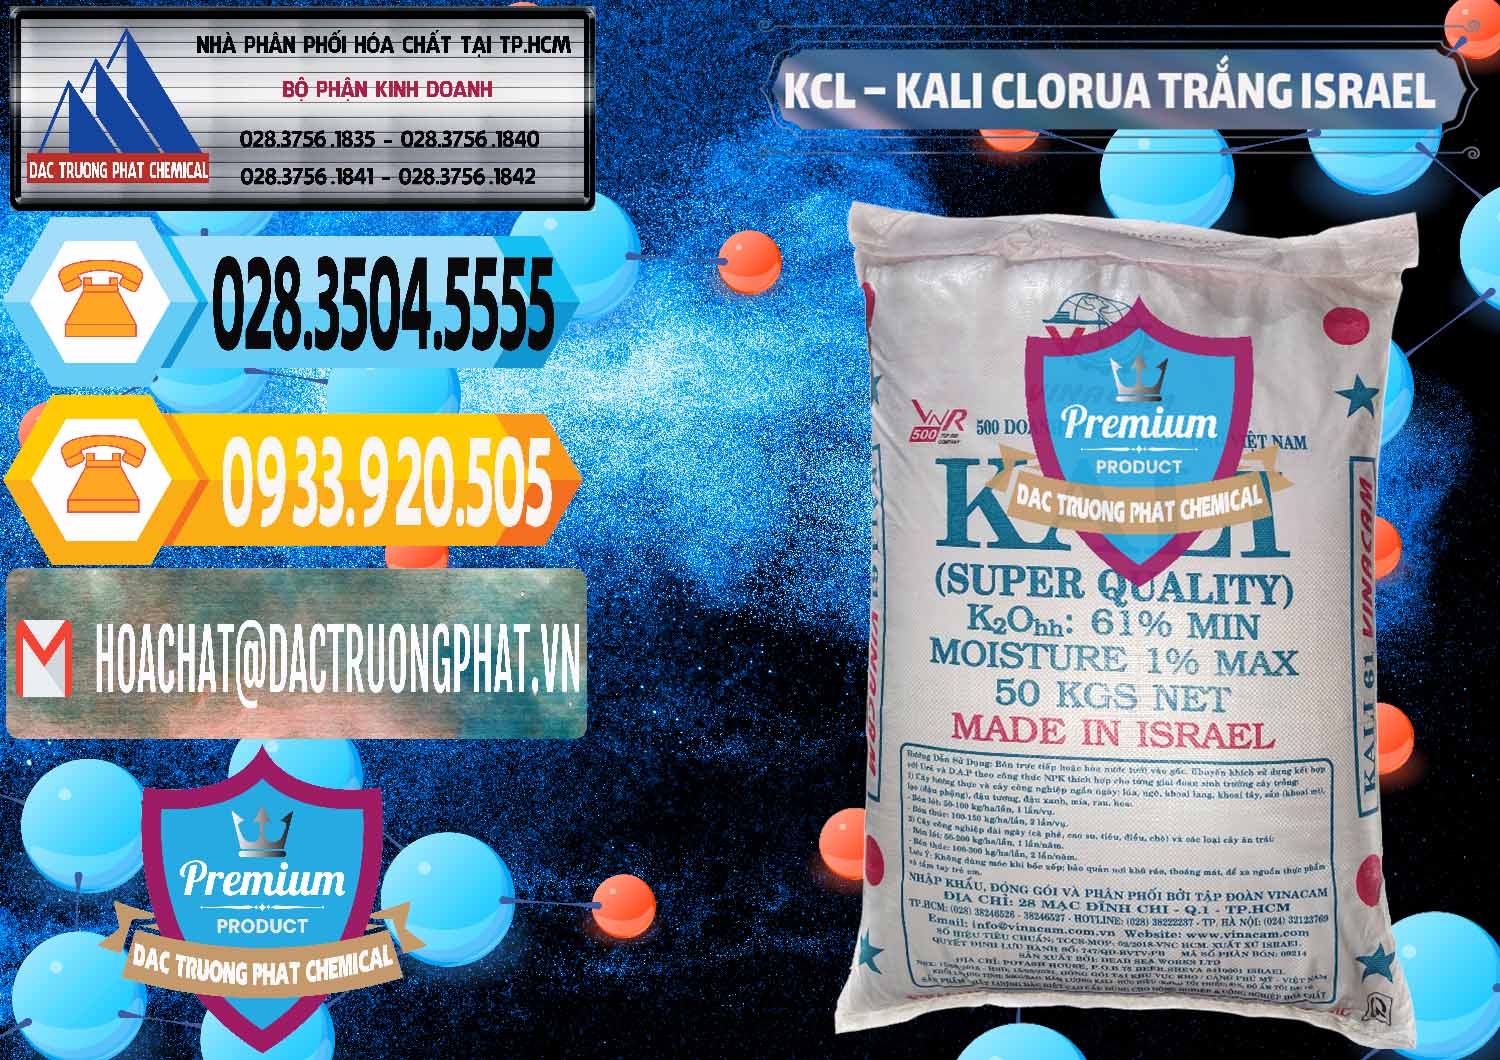 Nơi chuyên bán & cung ứng KCL – Kali Clorua Trắng Israel - 0087 - Phân phối và bán hóa chất tại TP.HCM - hoachattayrua.net